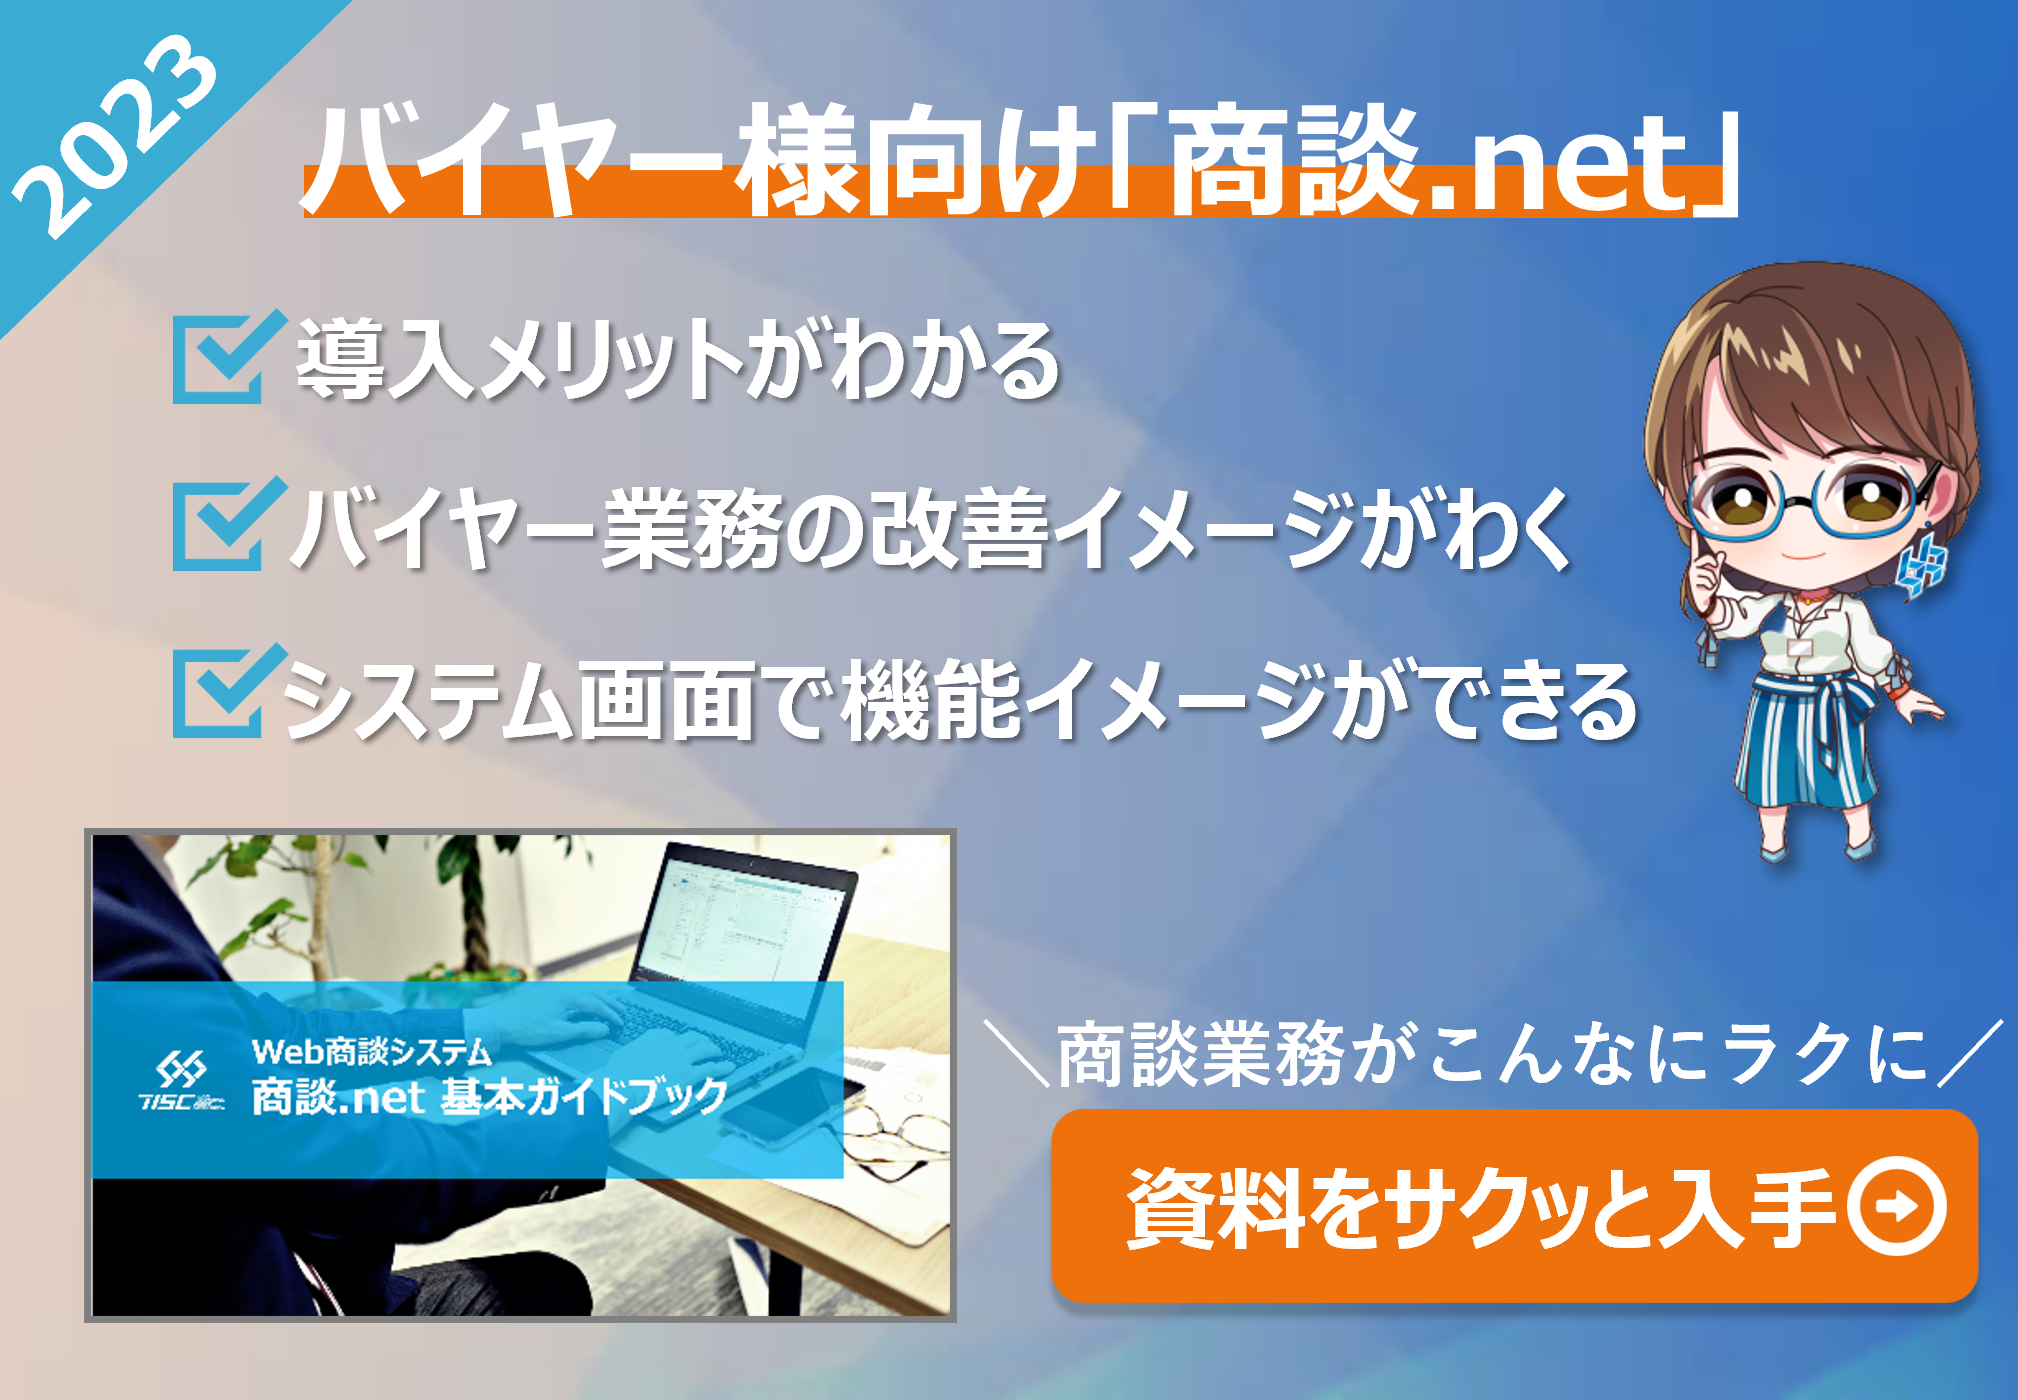 【ダウンロード資料】商談.net製品ガイドブック